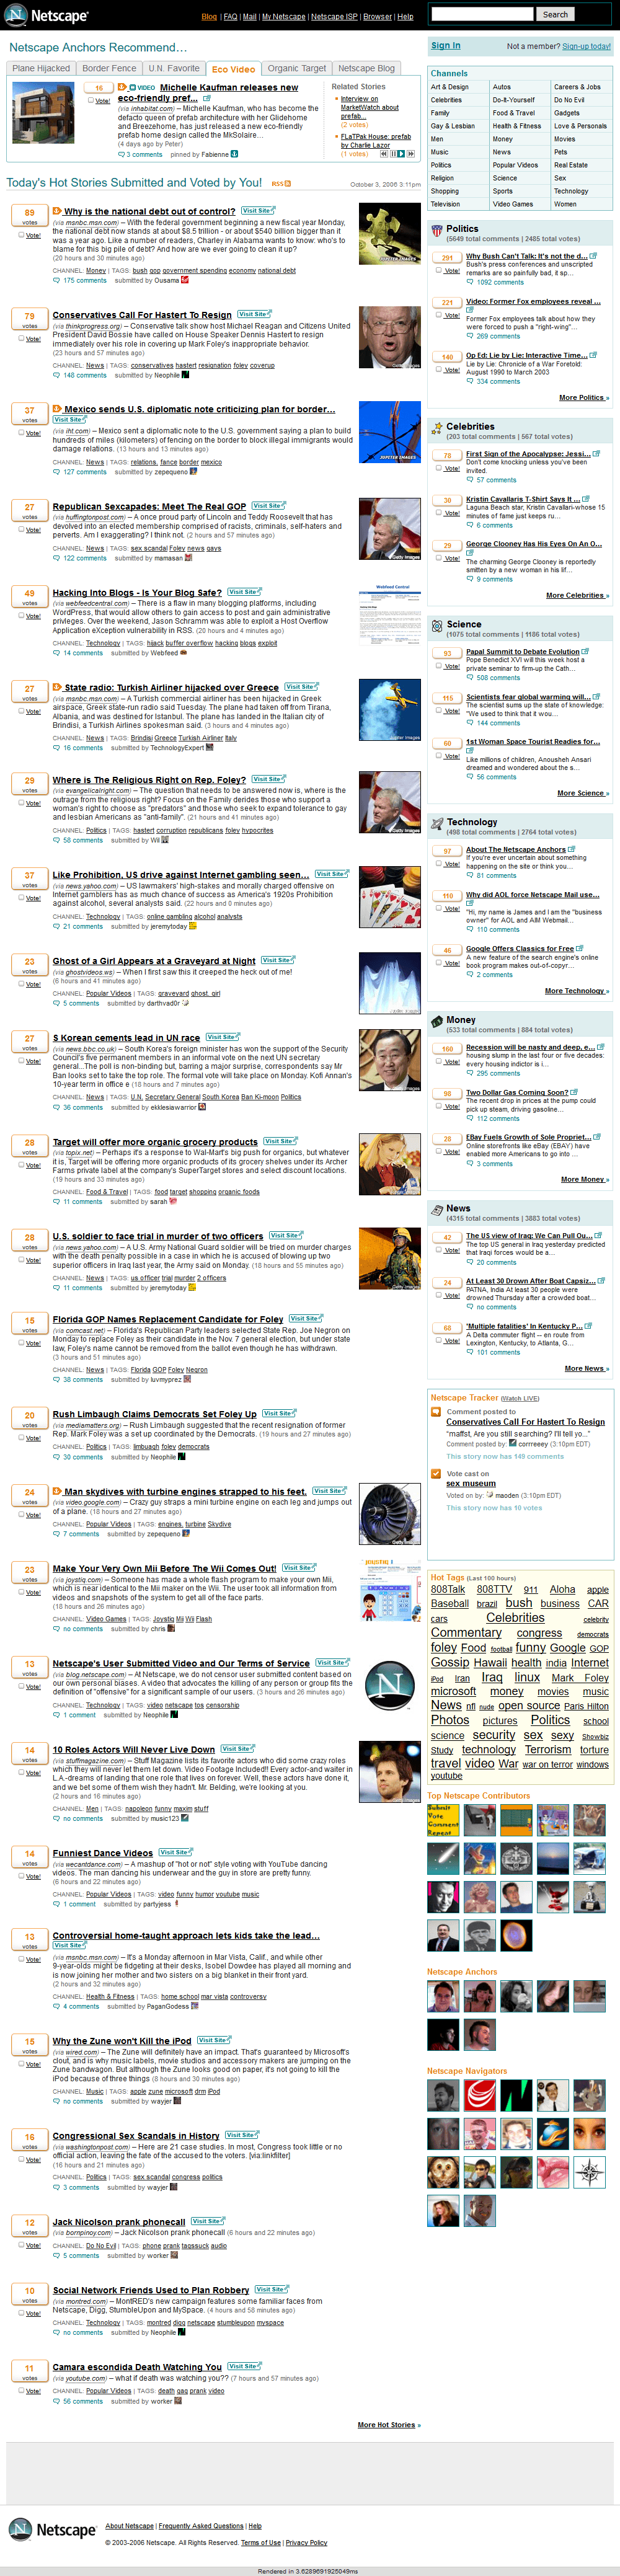 Netscape website in 2006